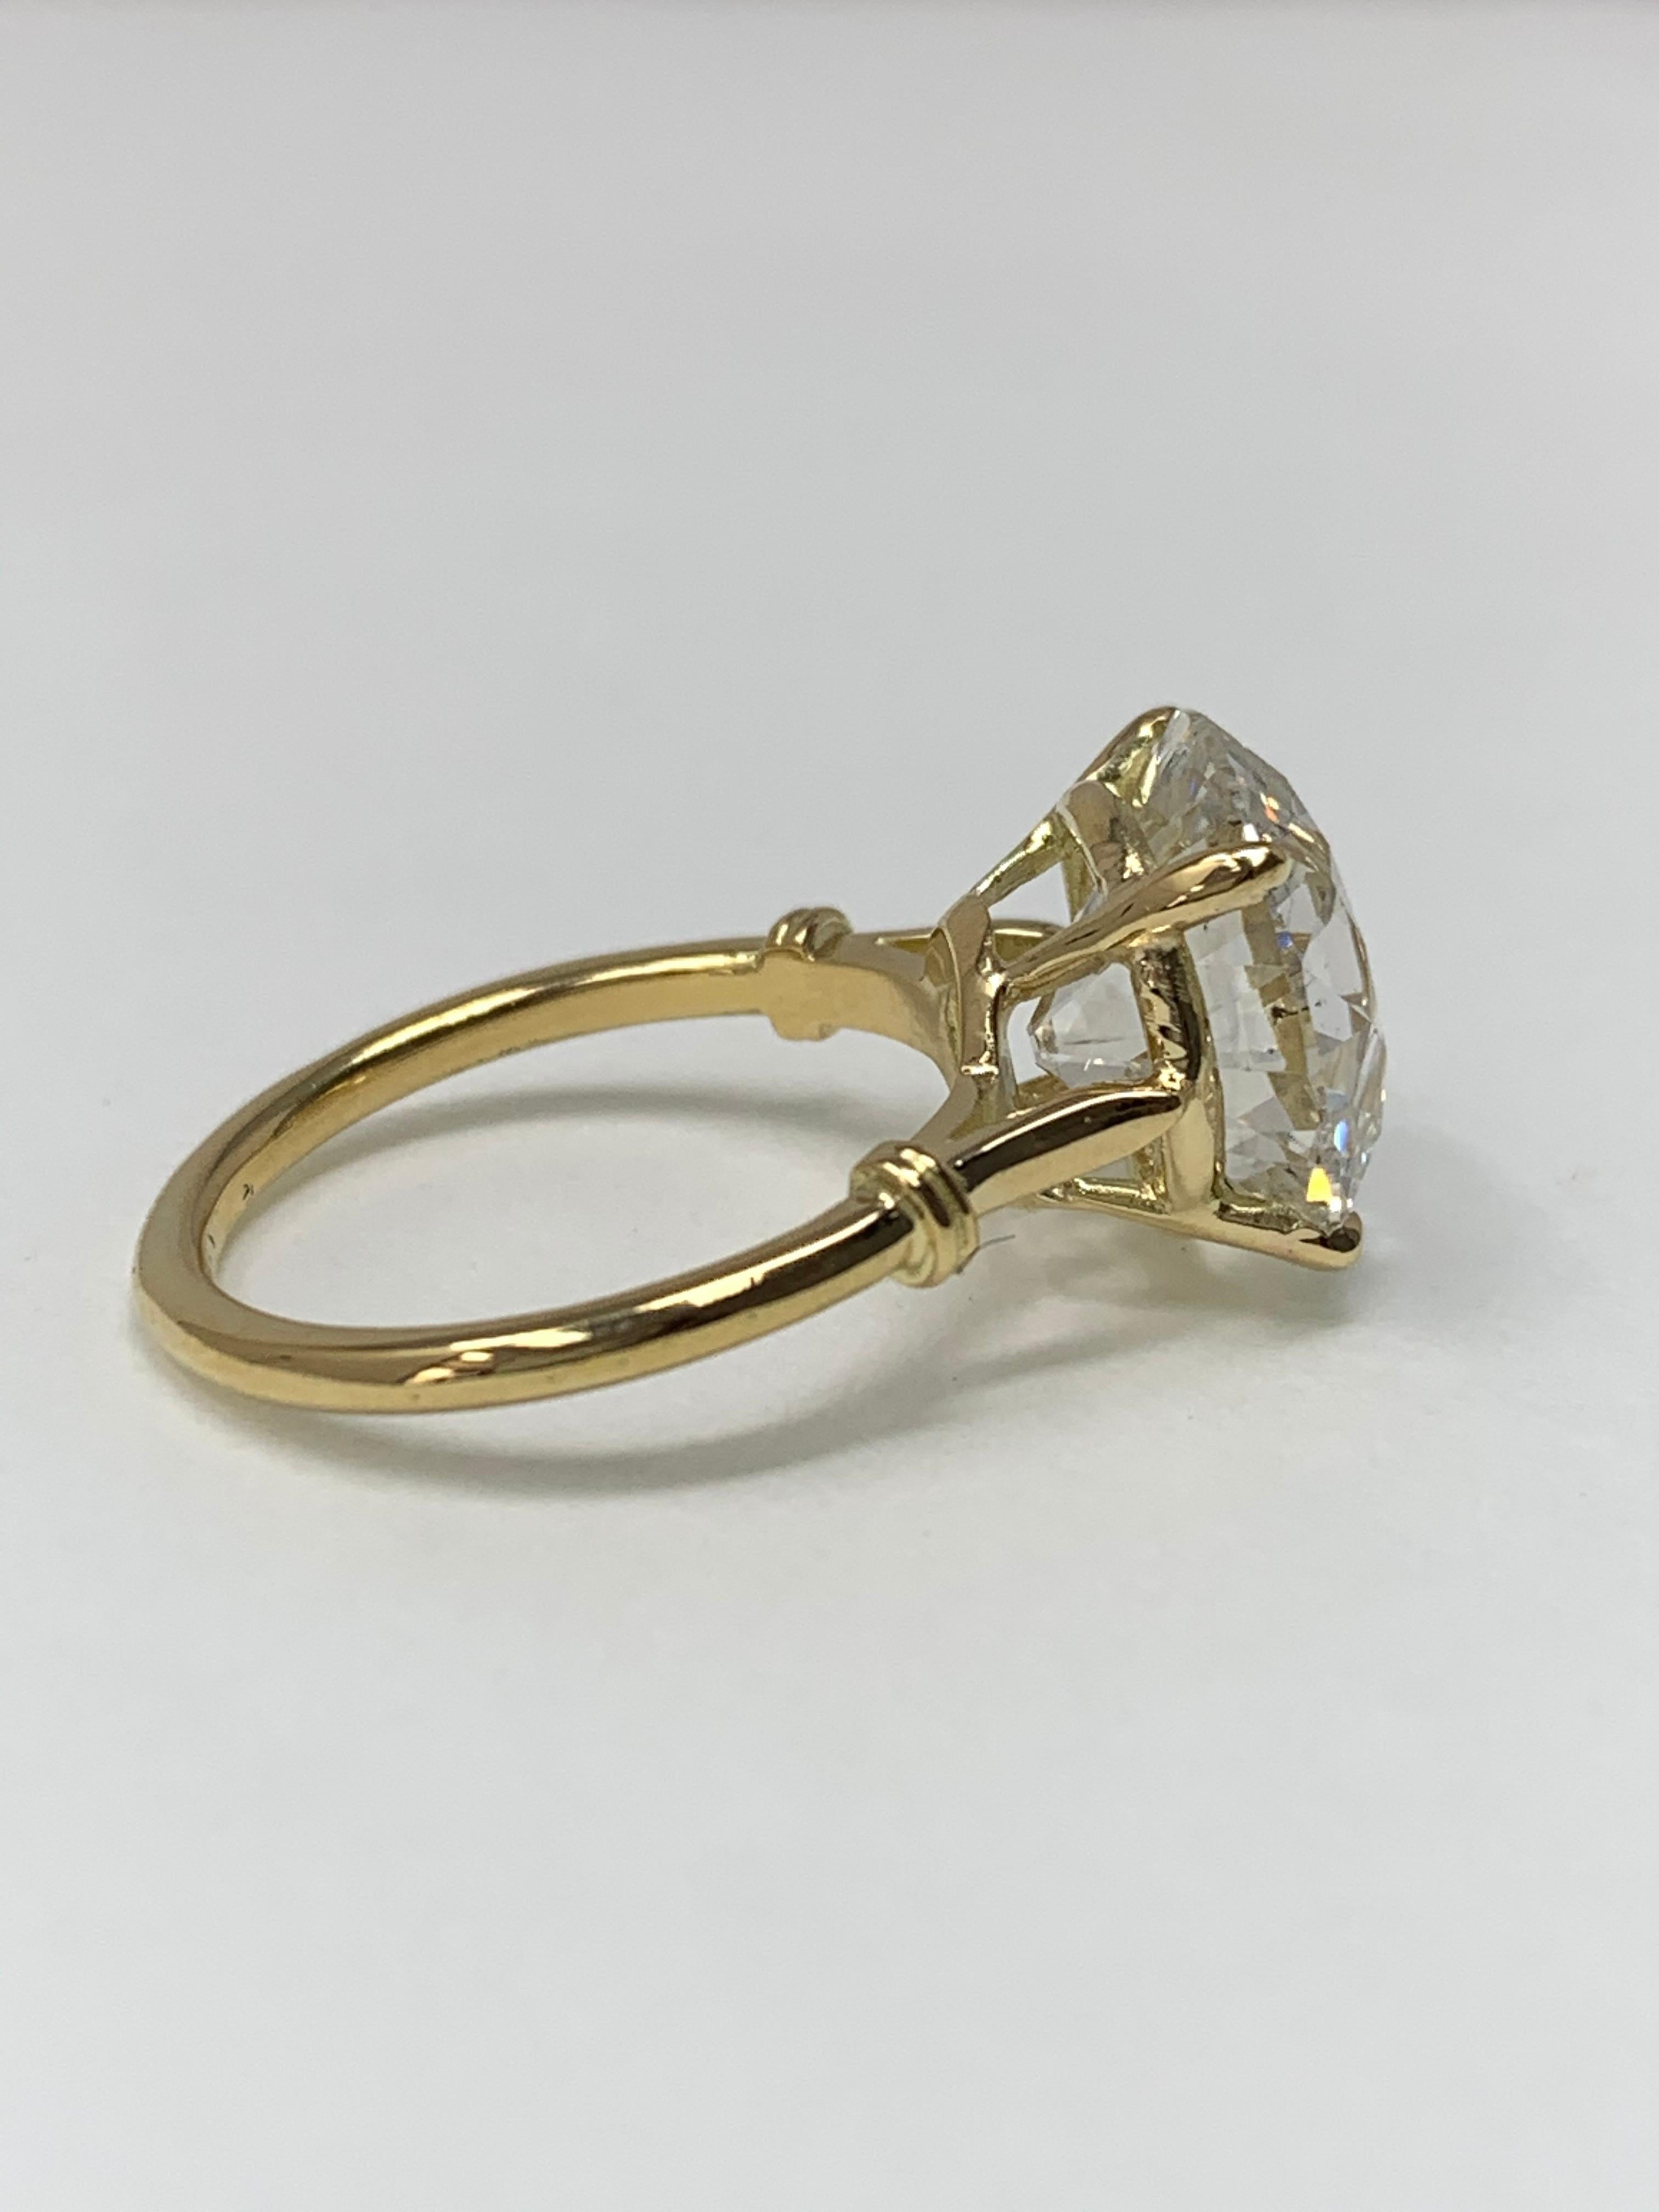 6.30 Carat Old European Cut Diamond Ring in 18 Karat Gold, GIA Certified. 3